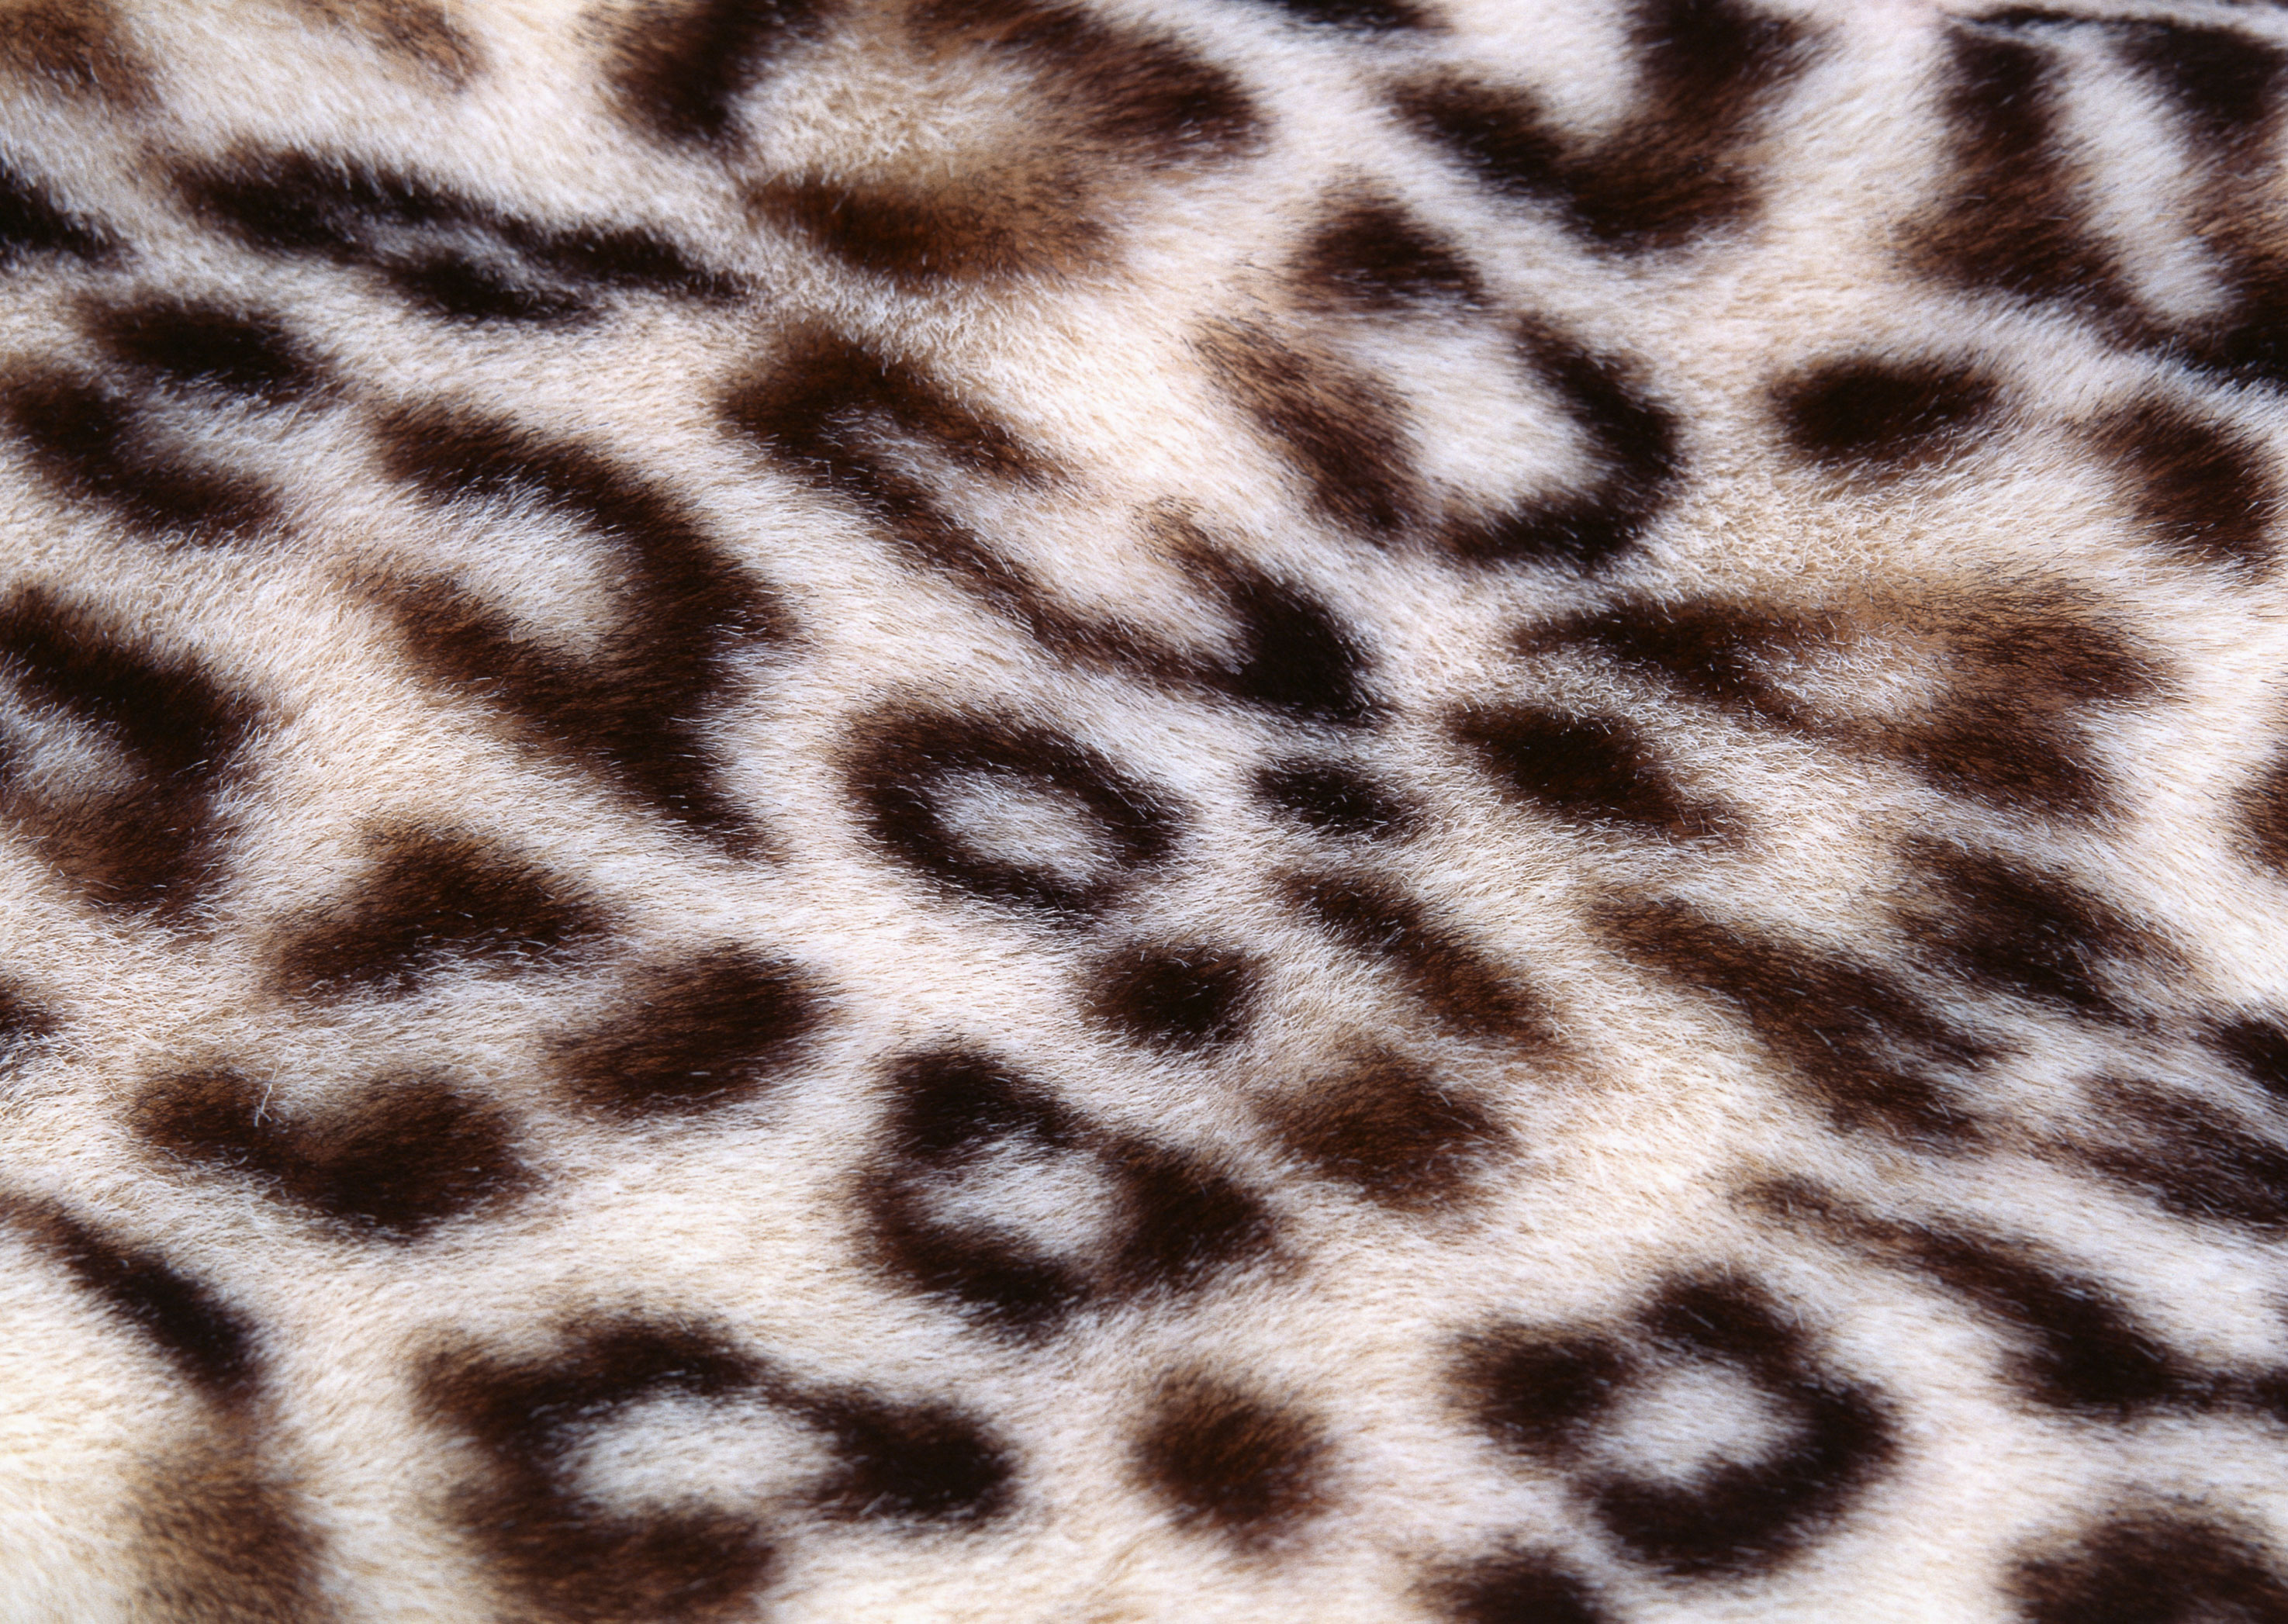 animal leopard skin texture, background